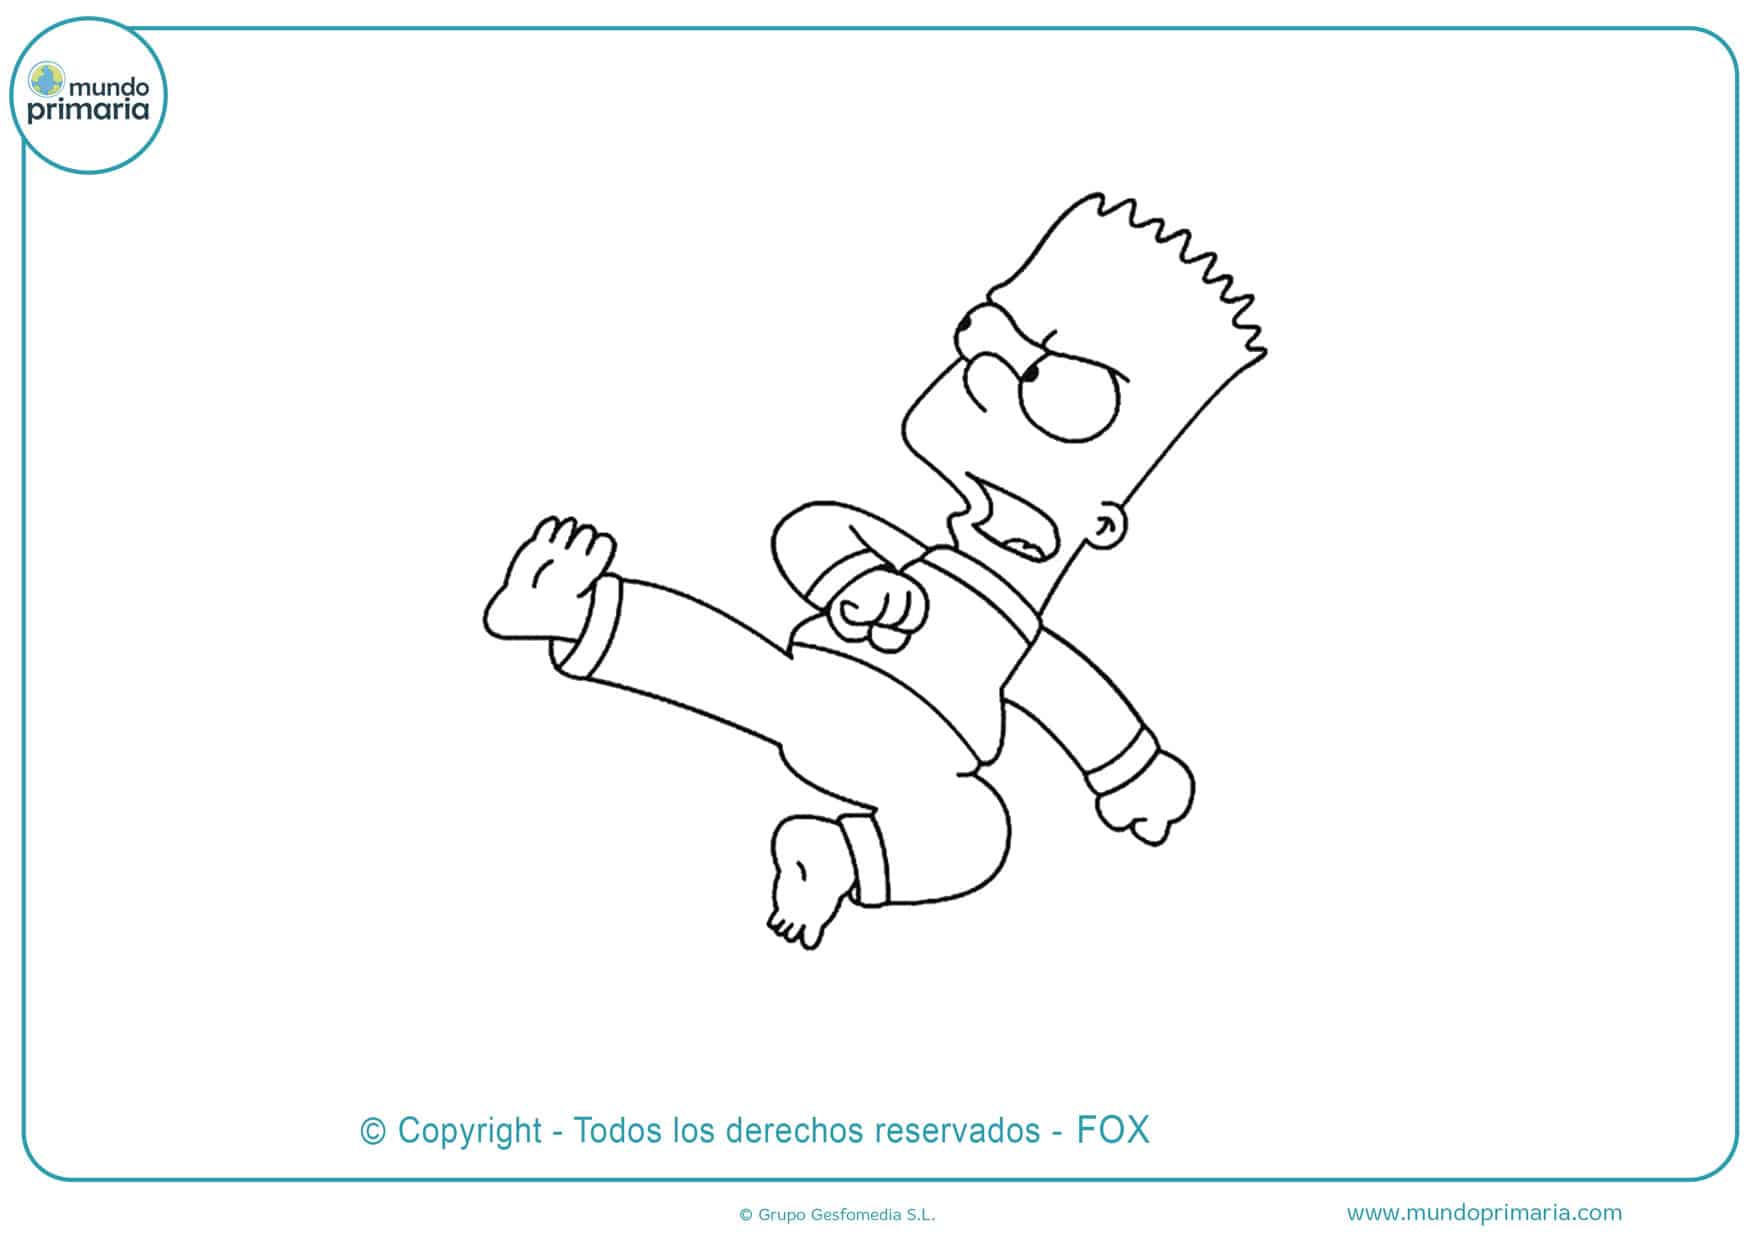 Dibujos de Los Simpson para Colorear 【Fáciles de Imprimir】